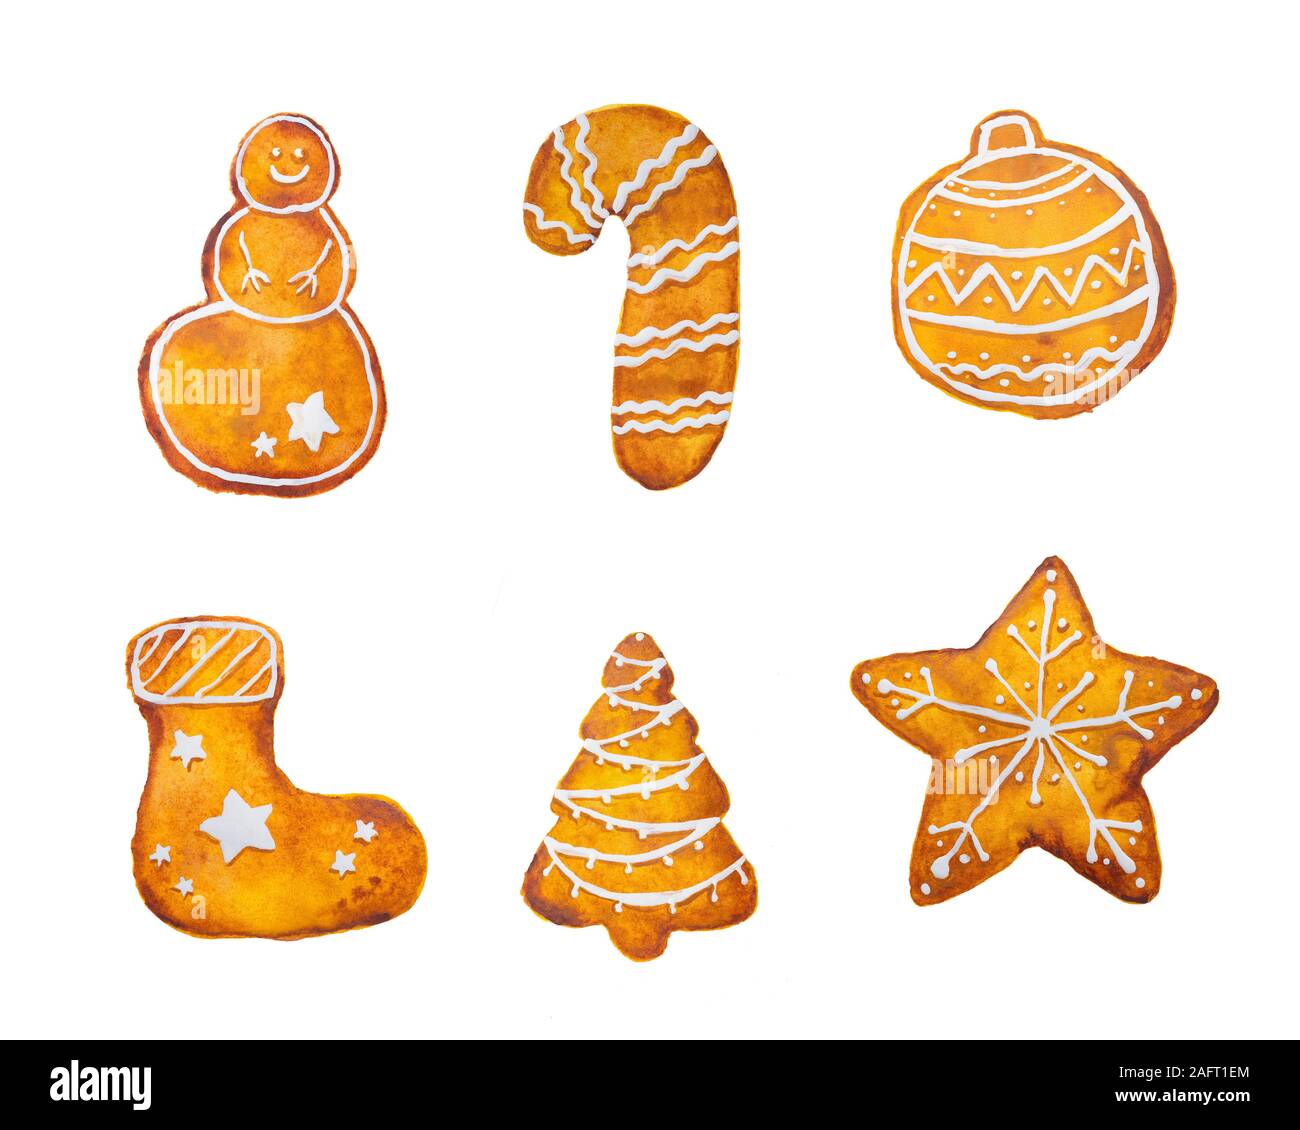 Handgezeichnete Aquarell-Zeichnung von Weihnachten Lebkuchen Schneeflocke Stern Schneemann Baumstrumpf auf weißem Hintergrund, isoliert Stockfoto